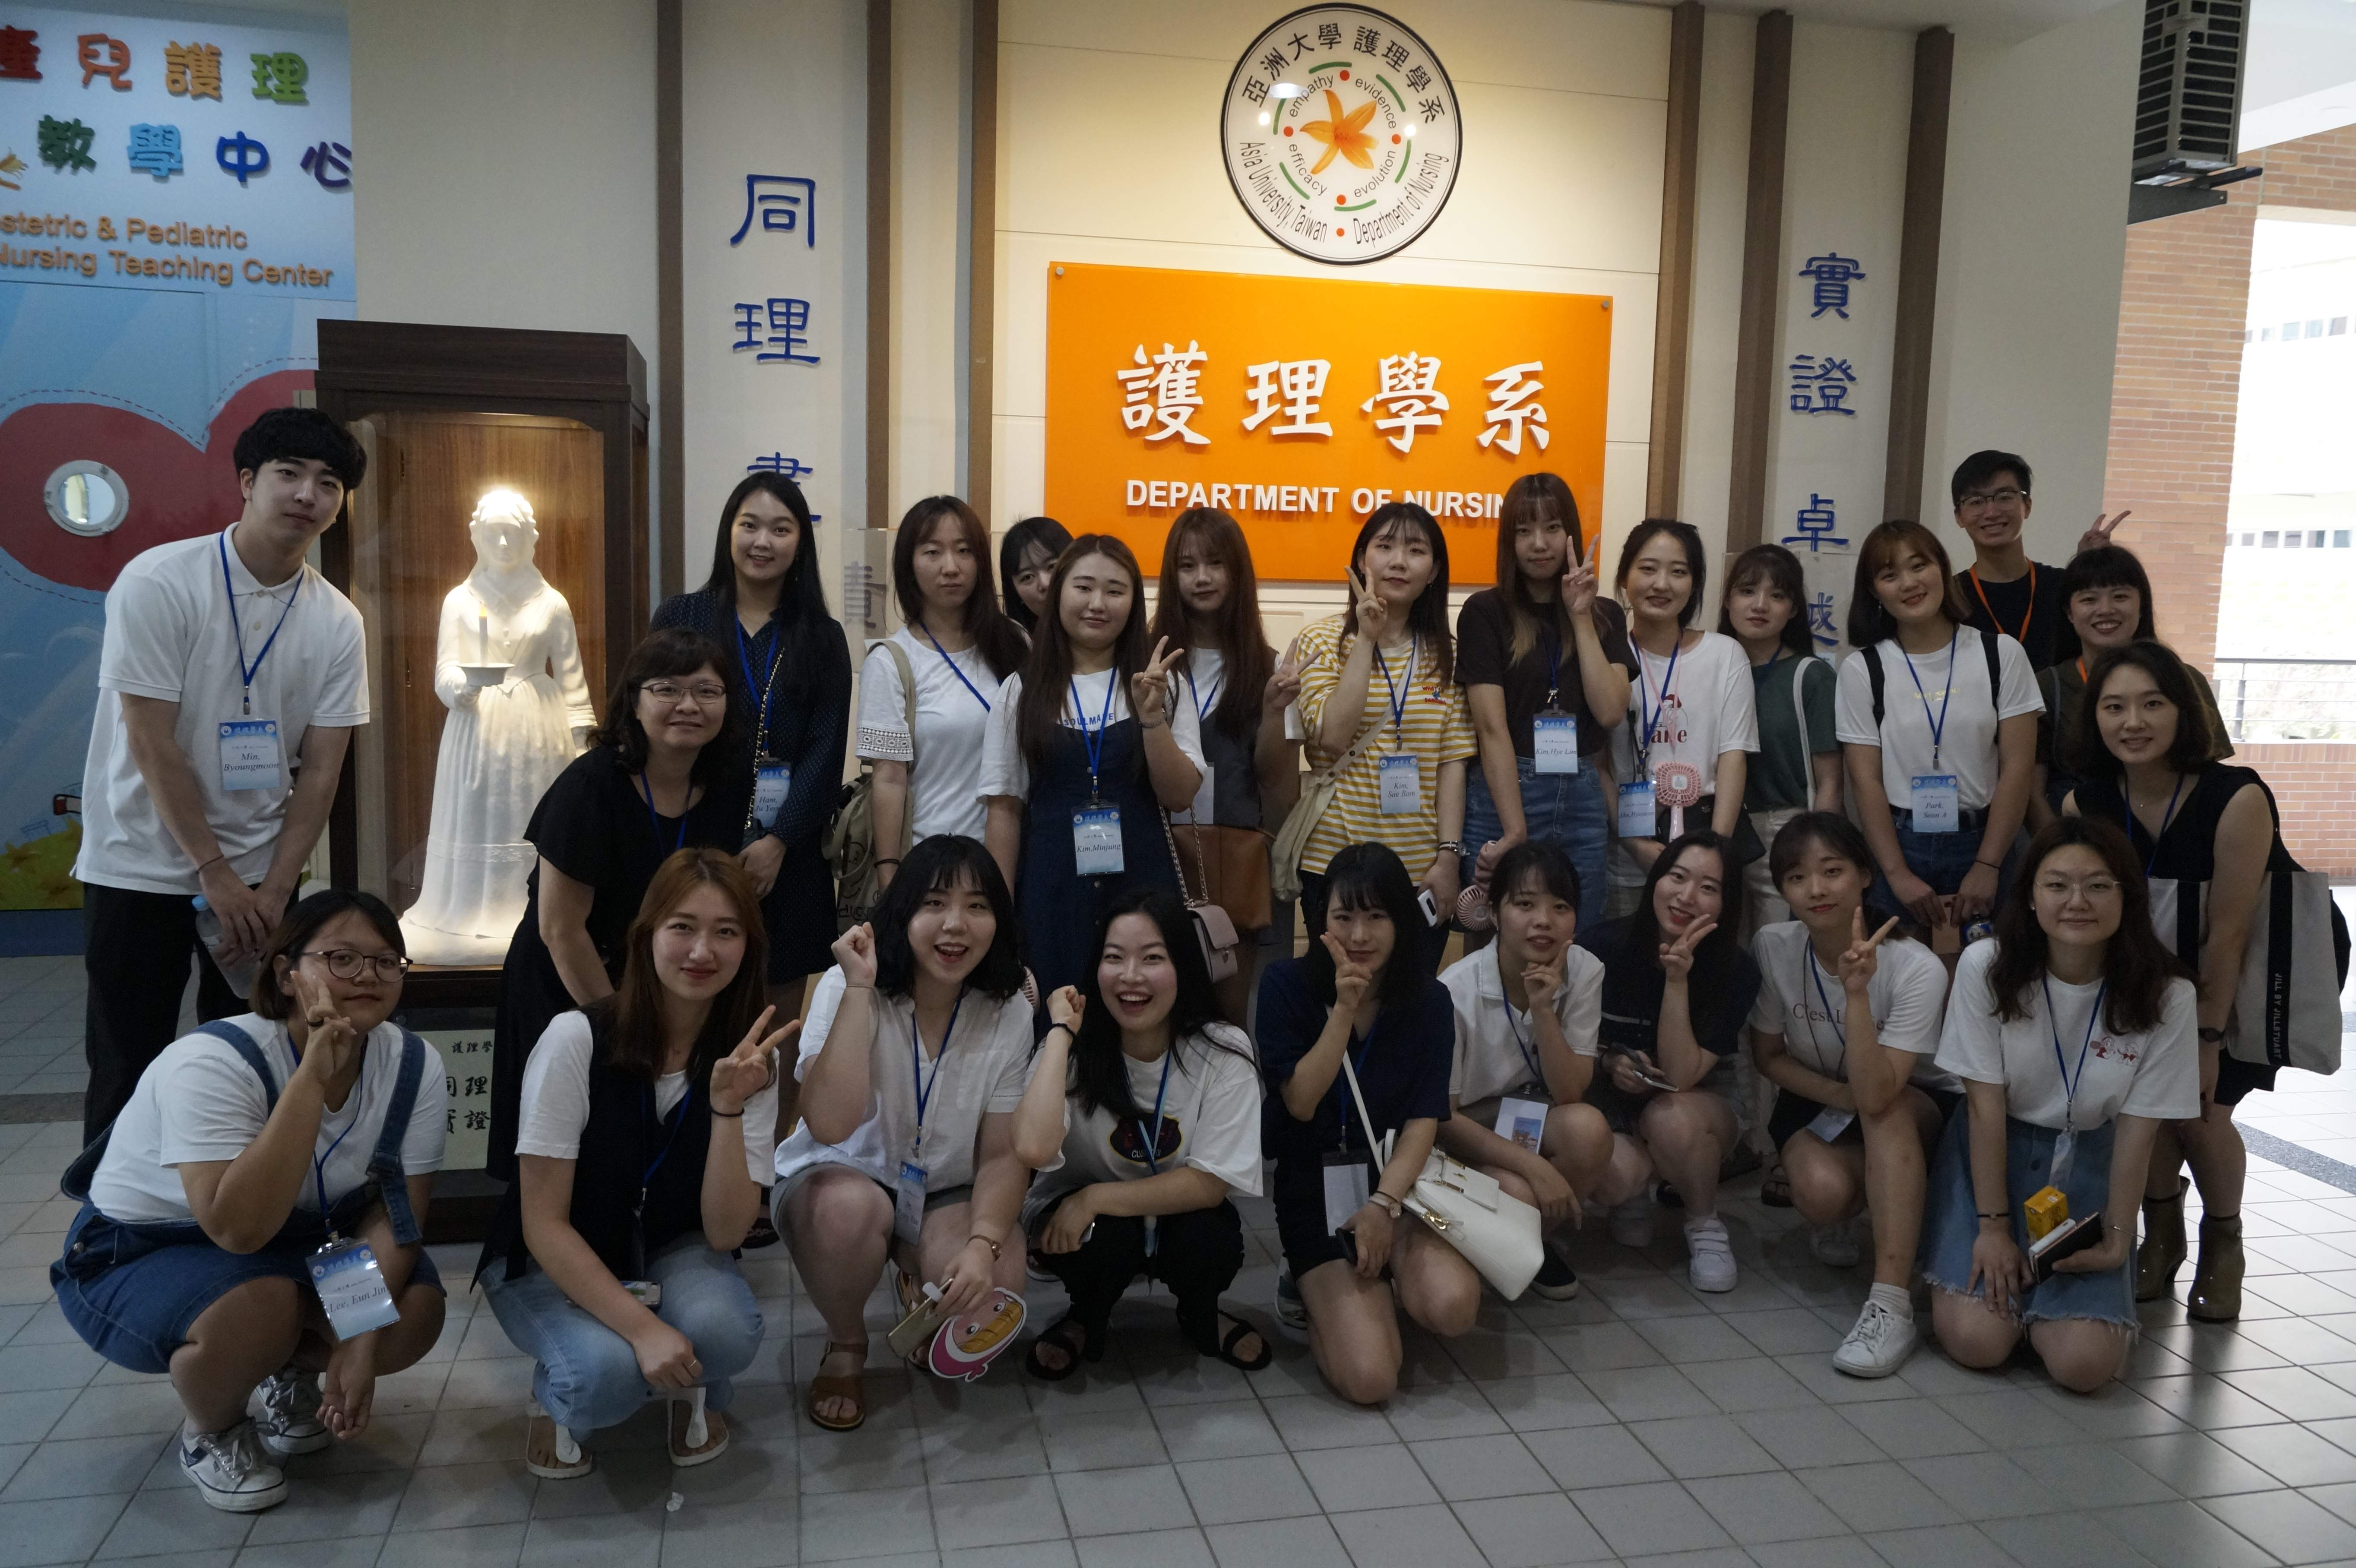 亞洲大學師生與來訪的韓國仁荷大學護理系師生開心合影。